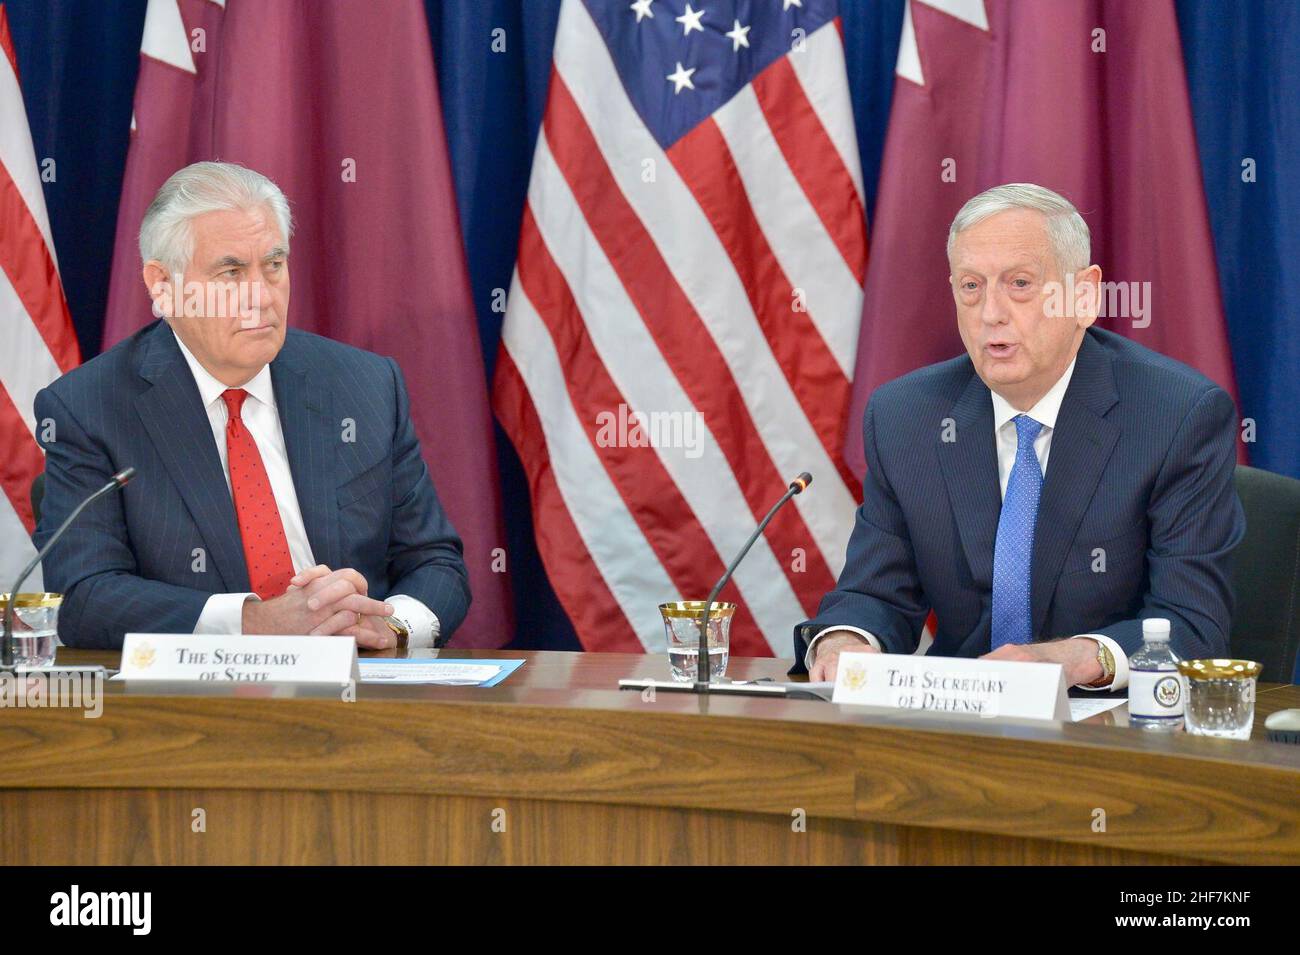 Sekretär Mattis hält Bemerkungen auf der hochrangigen Eröffnungssitzung des ersten strategischen Dialogs zwischen den USA und Katar - 26115028078. Stockfoto